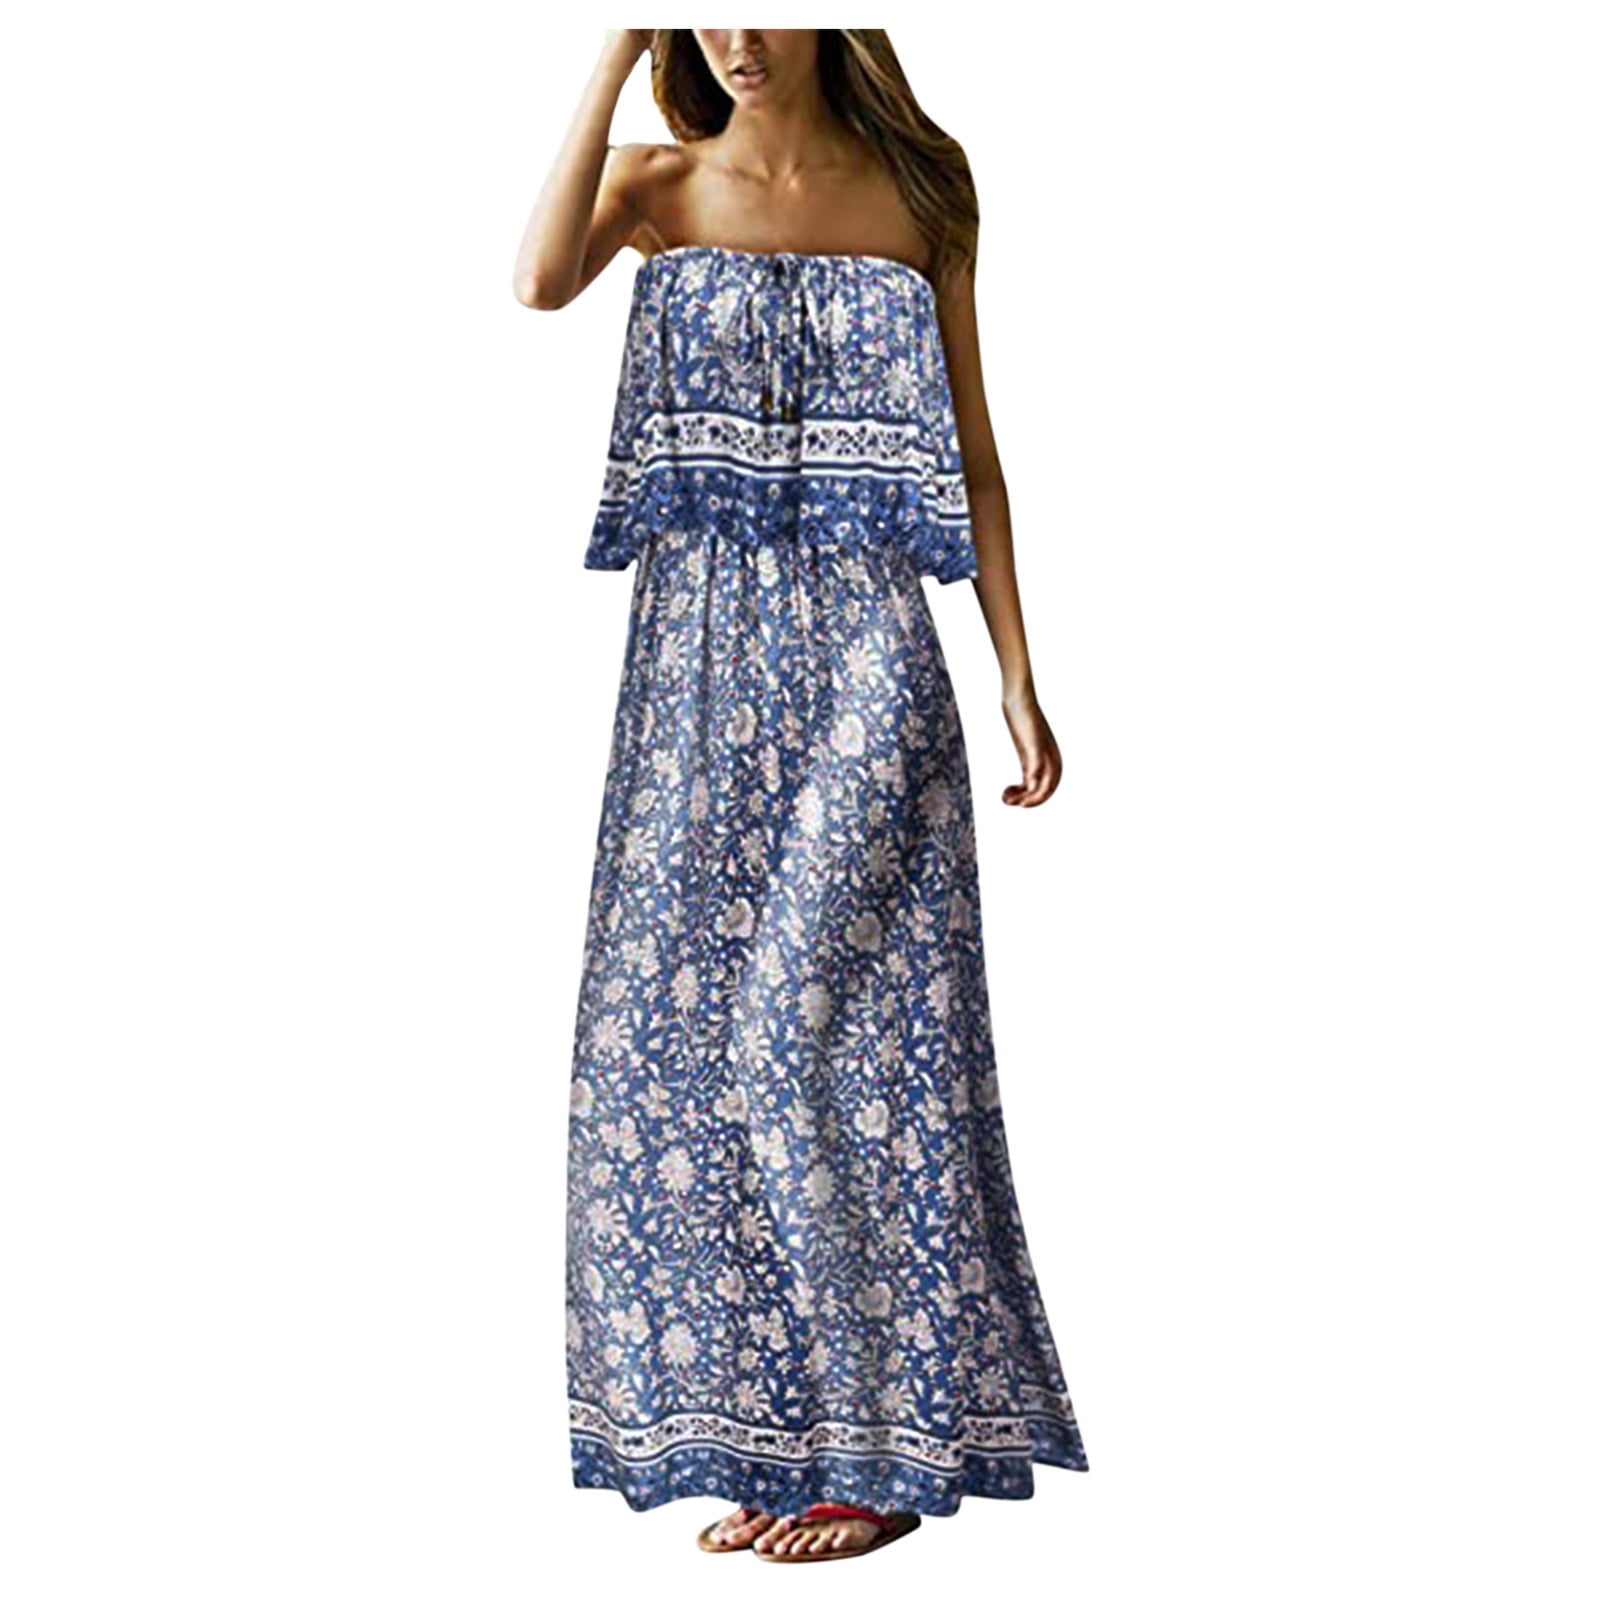 VUPSGEZ Women'S Summer Strapless Long Dress Beach Bohemian Floral Print ...